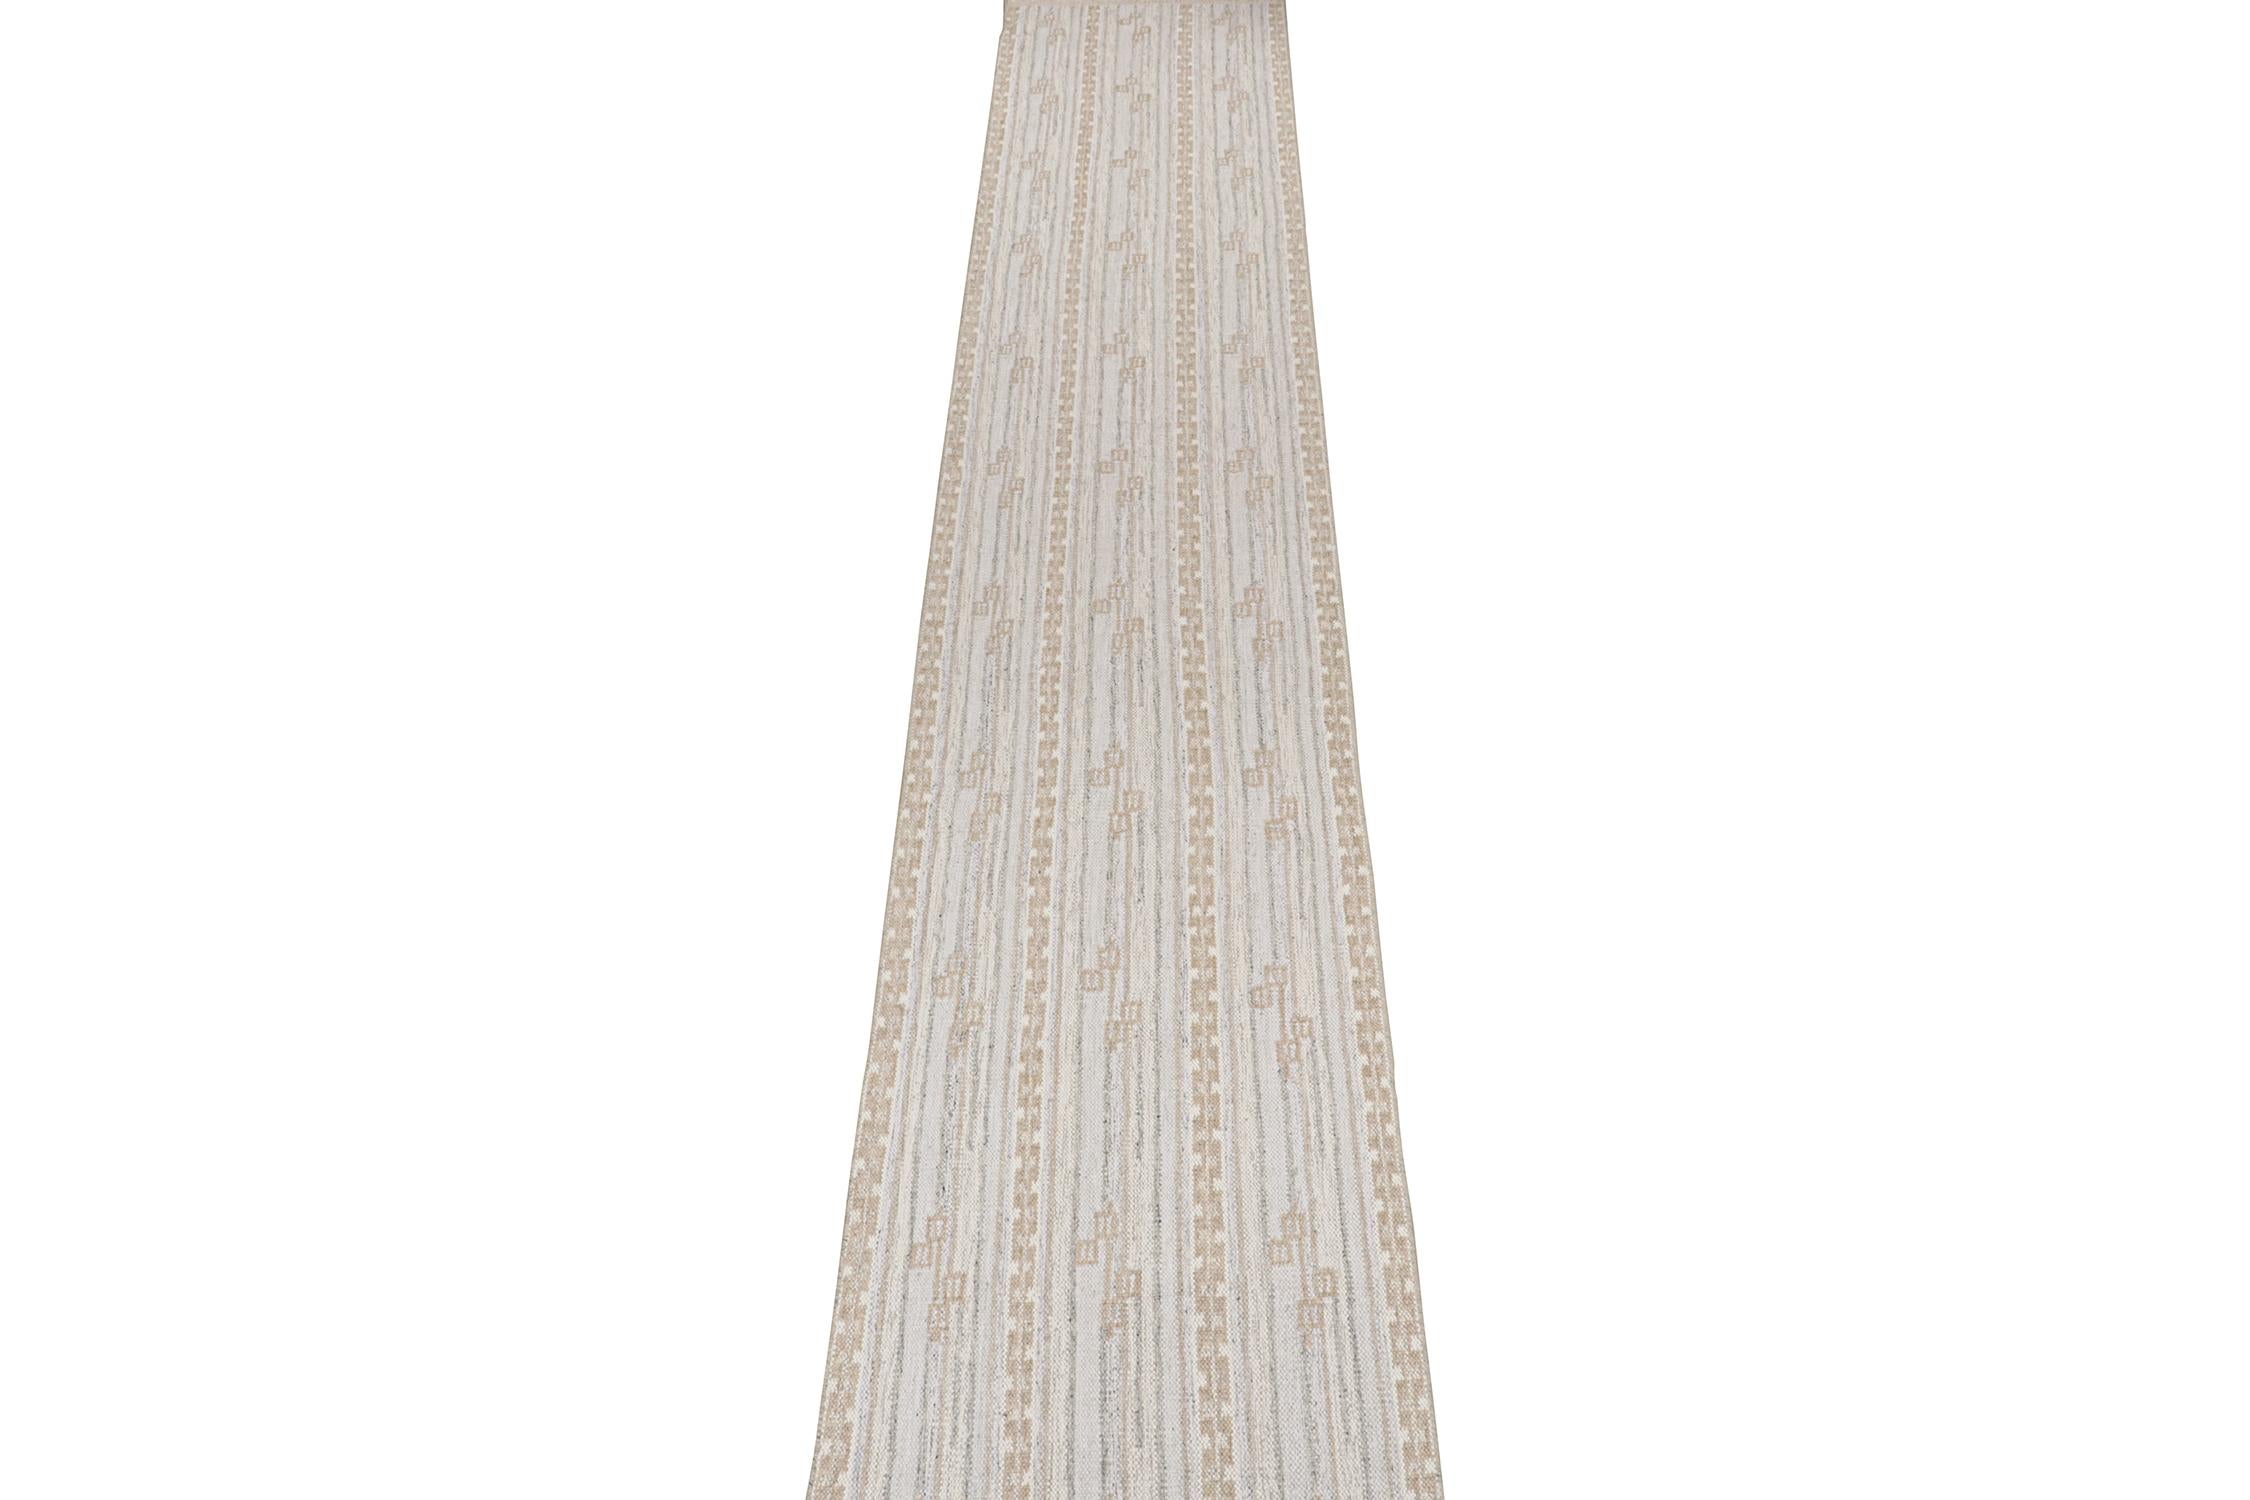 Dieser 3x36 Kelim im schwedischen Stil ist eine neue Ergänzung der preisgekrönten skandinavischen Flachgewebekollektion von Rug & Kilim. 

Weiter zum Design: 

Dieser extralange Läufer ist eine raffinierte moderne Variante des klassischen